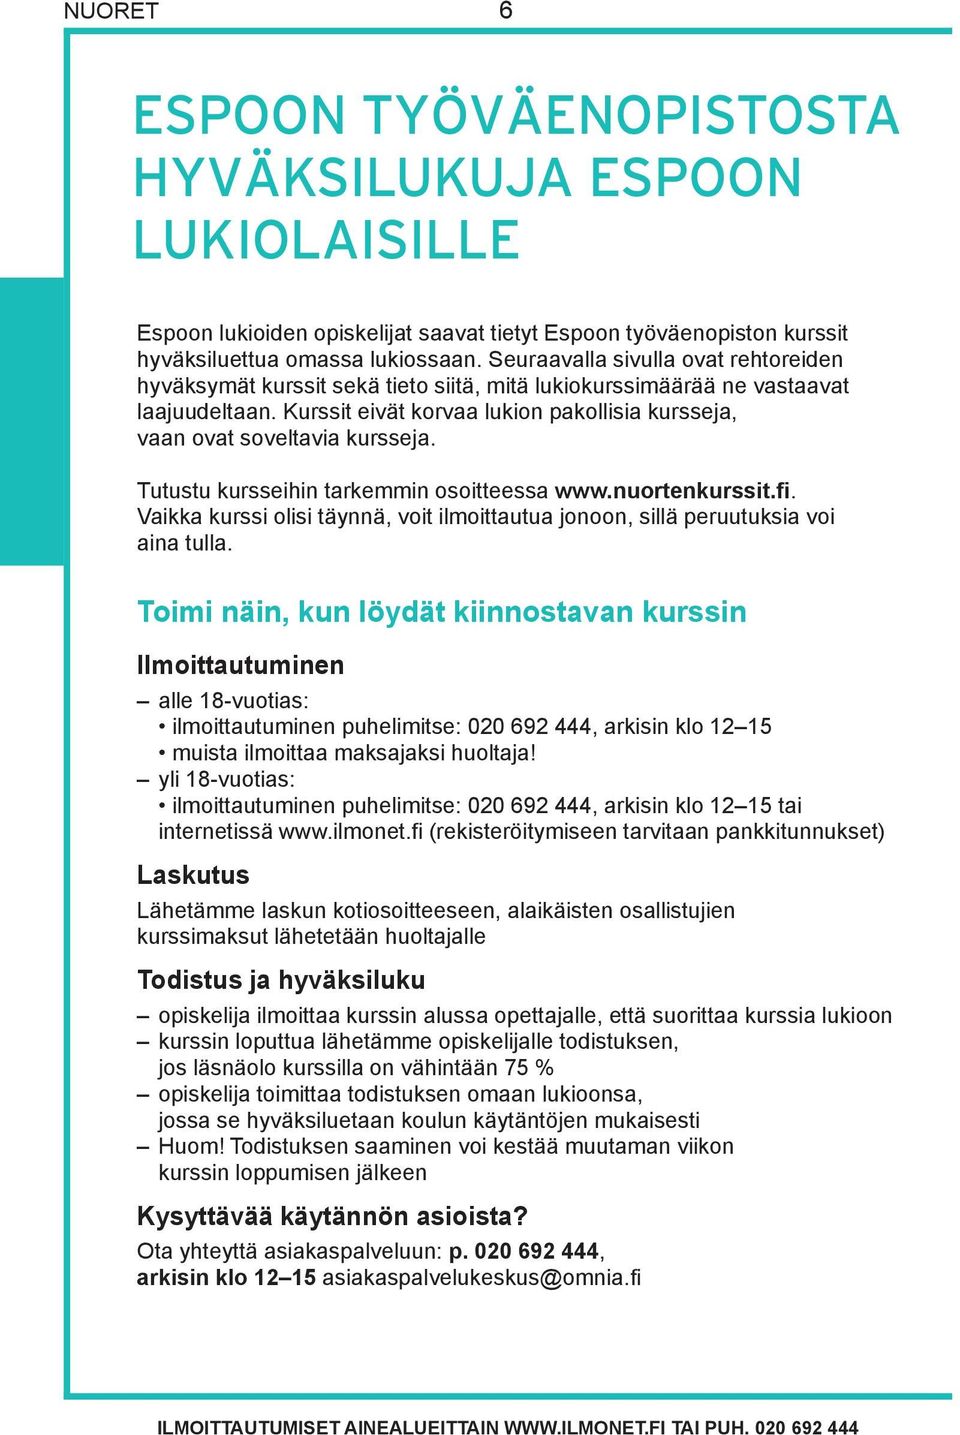 Kurssit eivät korvaa lukion pakollisia kursseja, vaan ovat soveltavia kursseja. Tutustu kursseihin tarkemmin osoitteessa www.nuortenkurssit.fi.